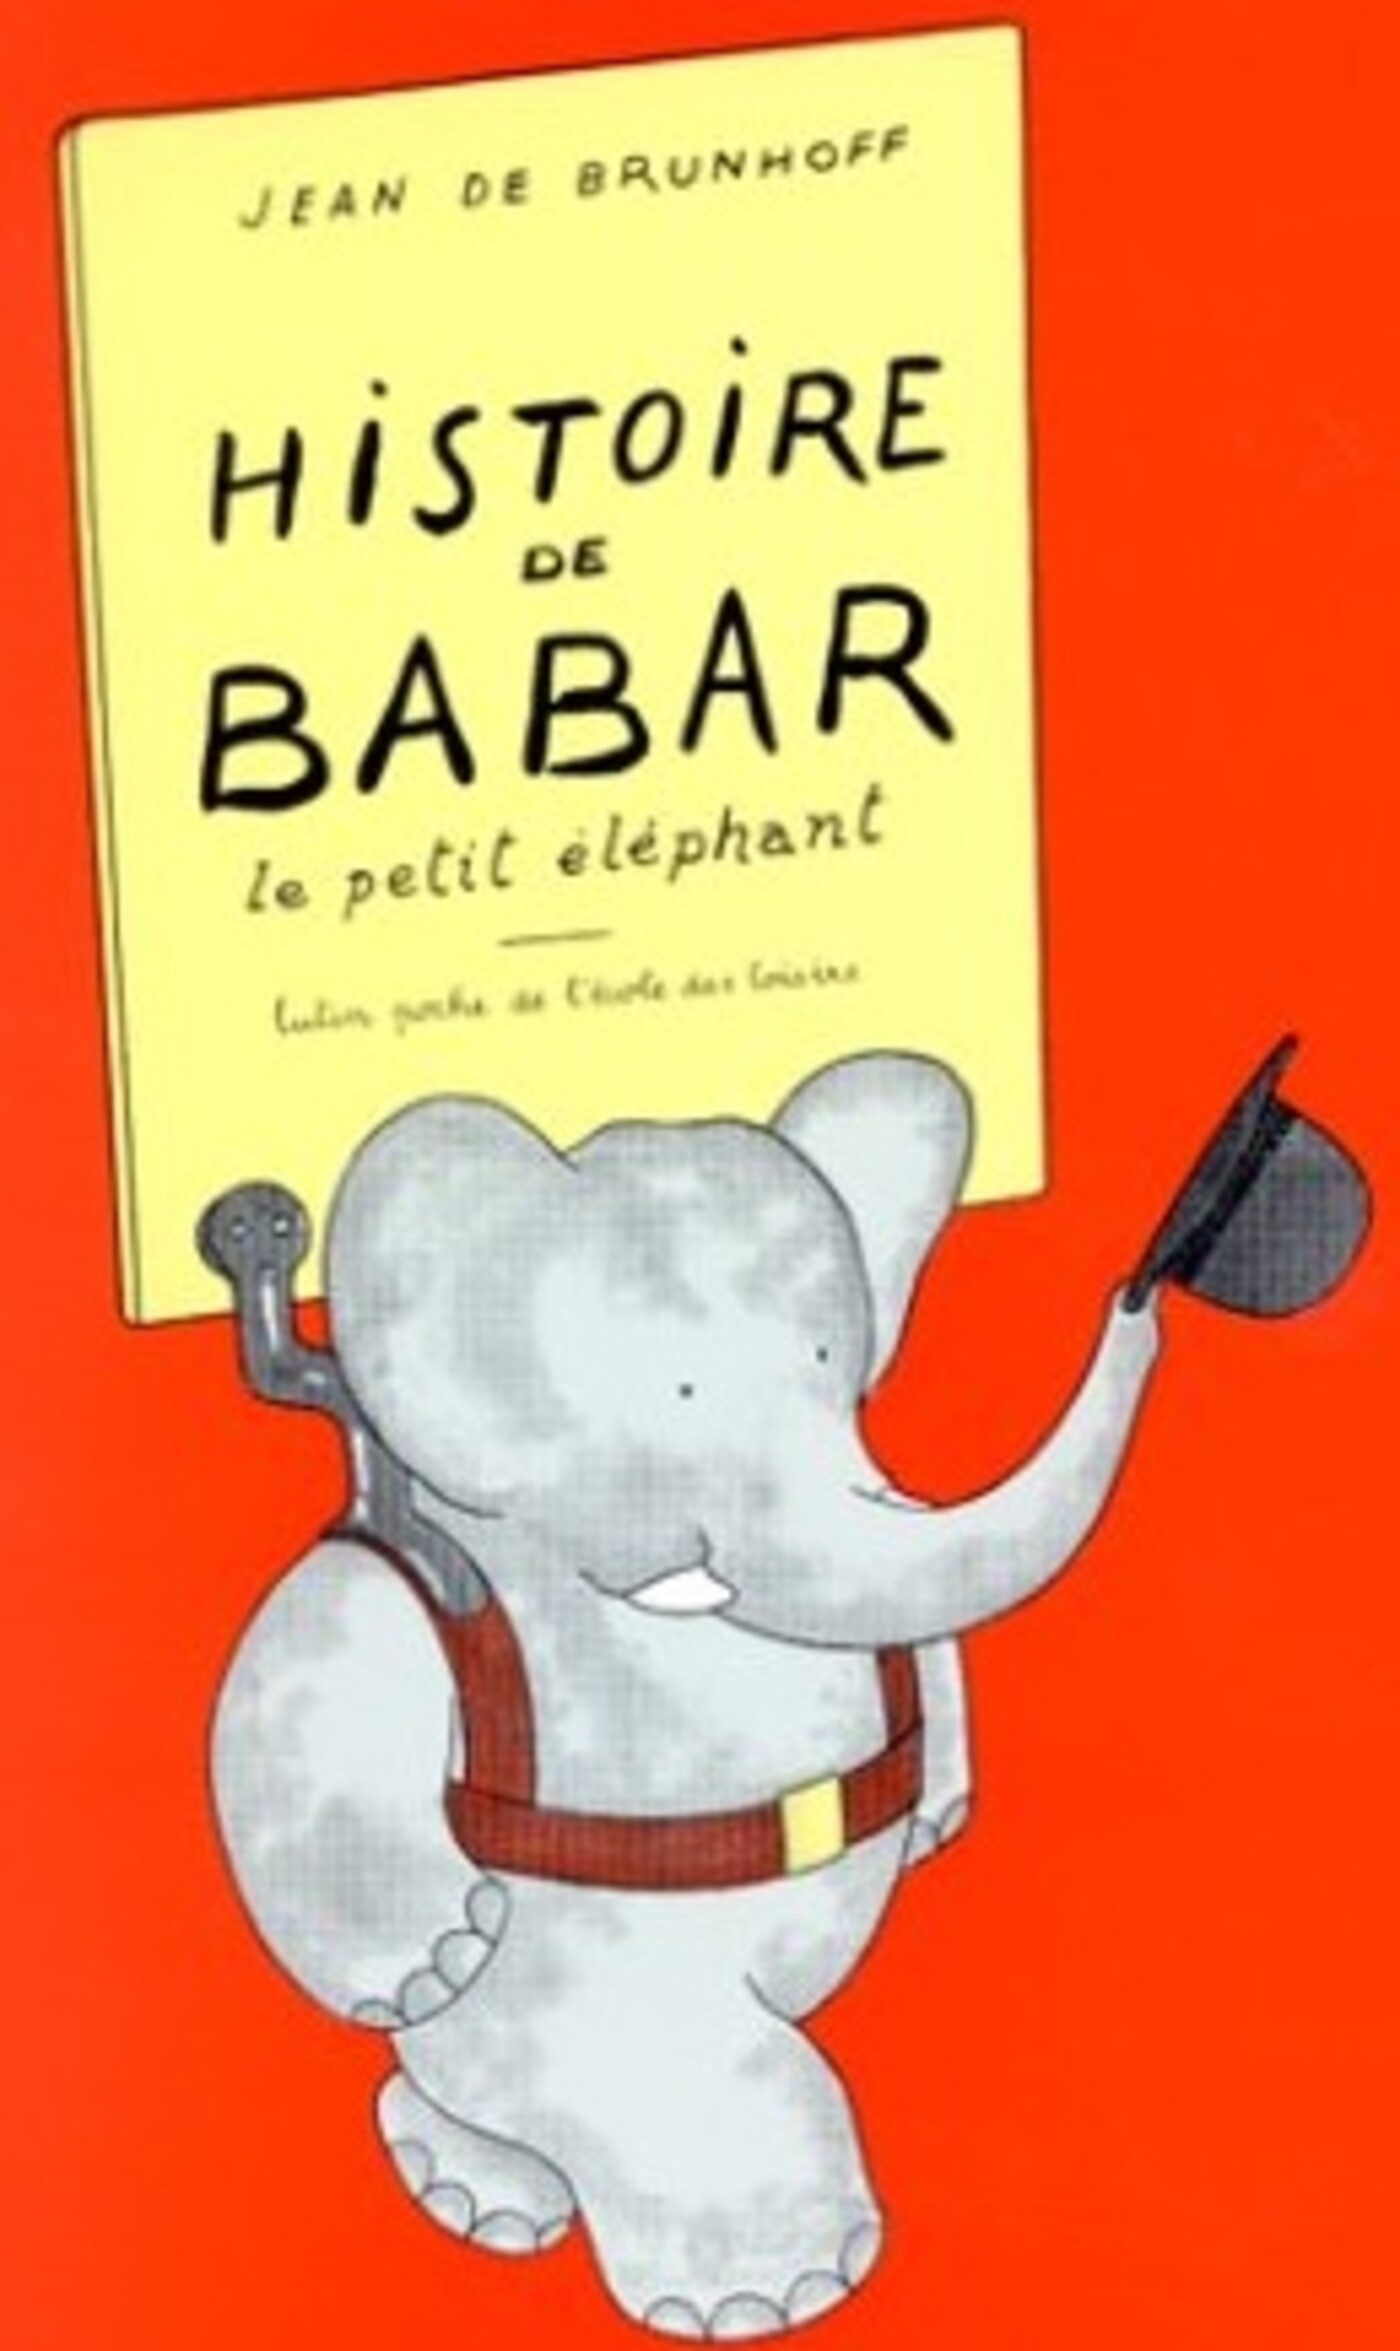 De geschiedenis van het olifantje Babar - Jean de Brunhoff